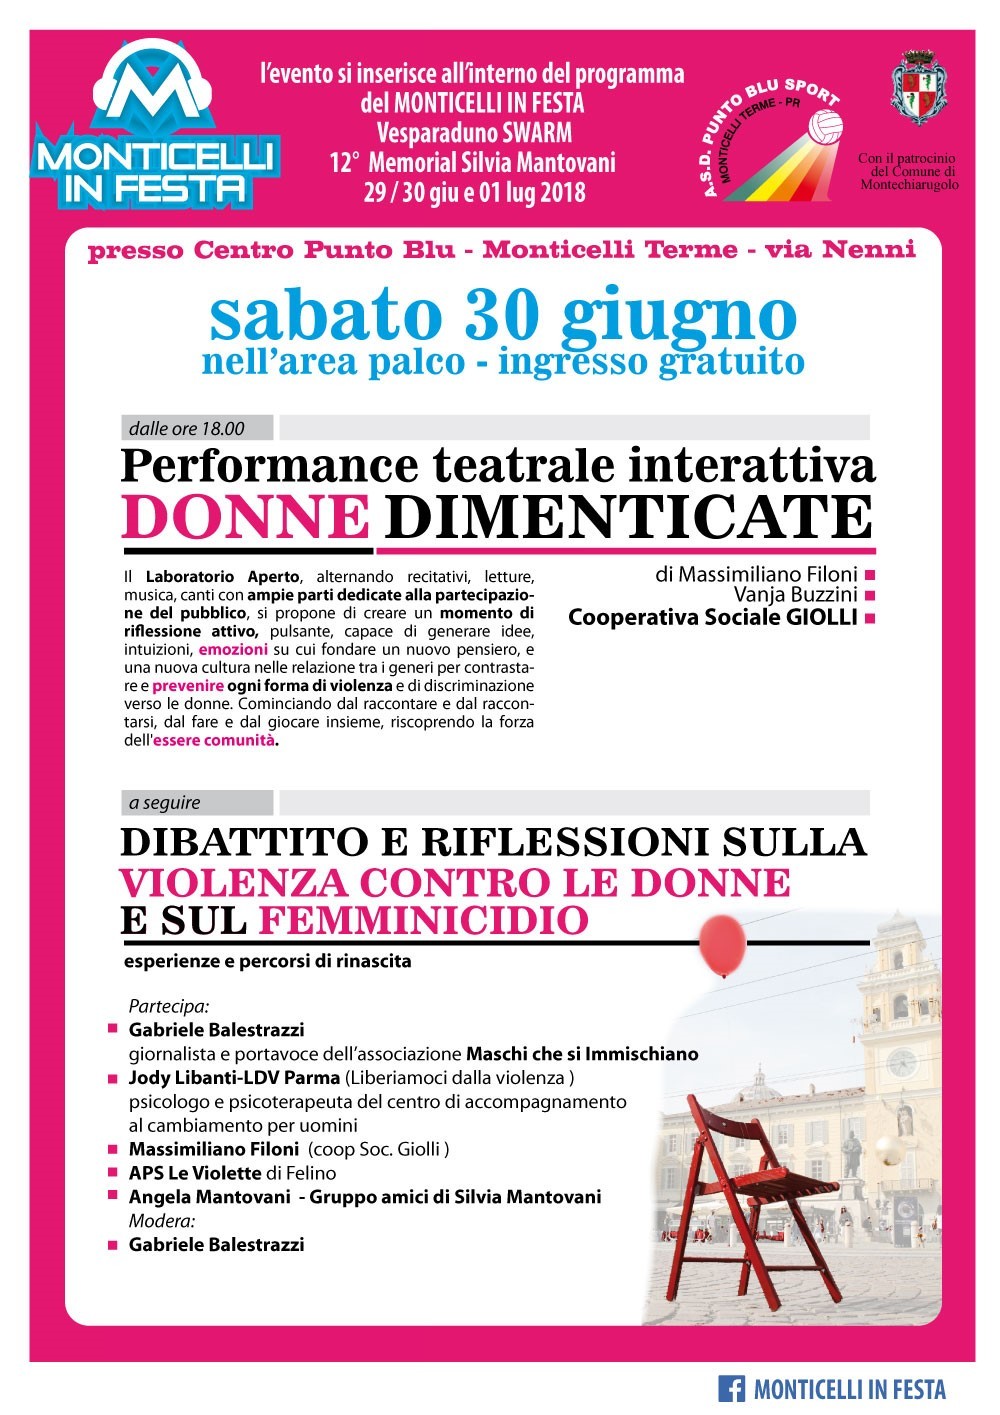 Donne dimenticate  Il 30 giugno a Monticelli la performance teatrale interattiva